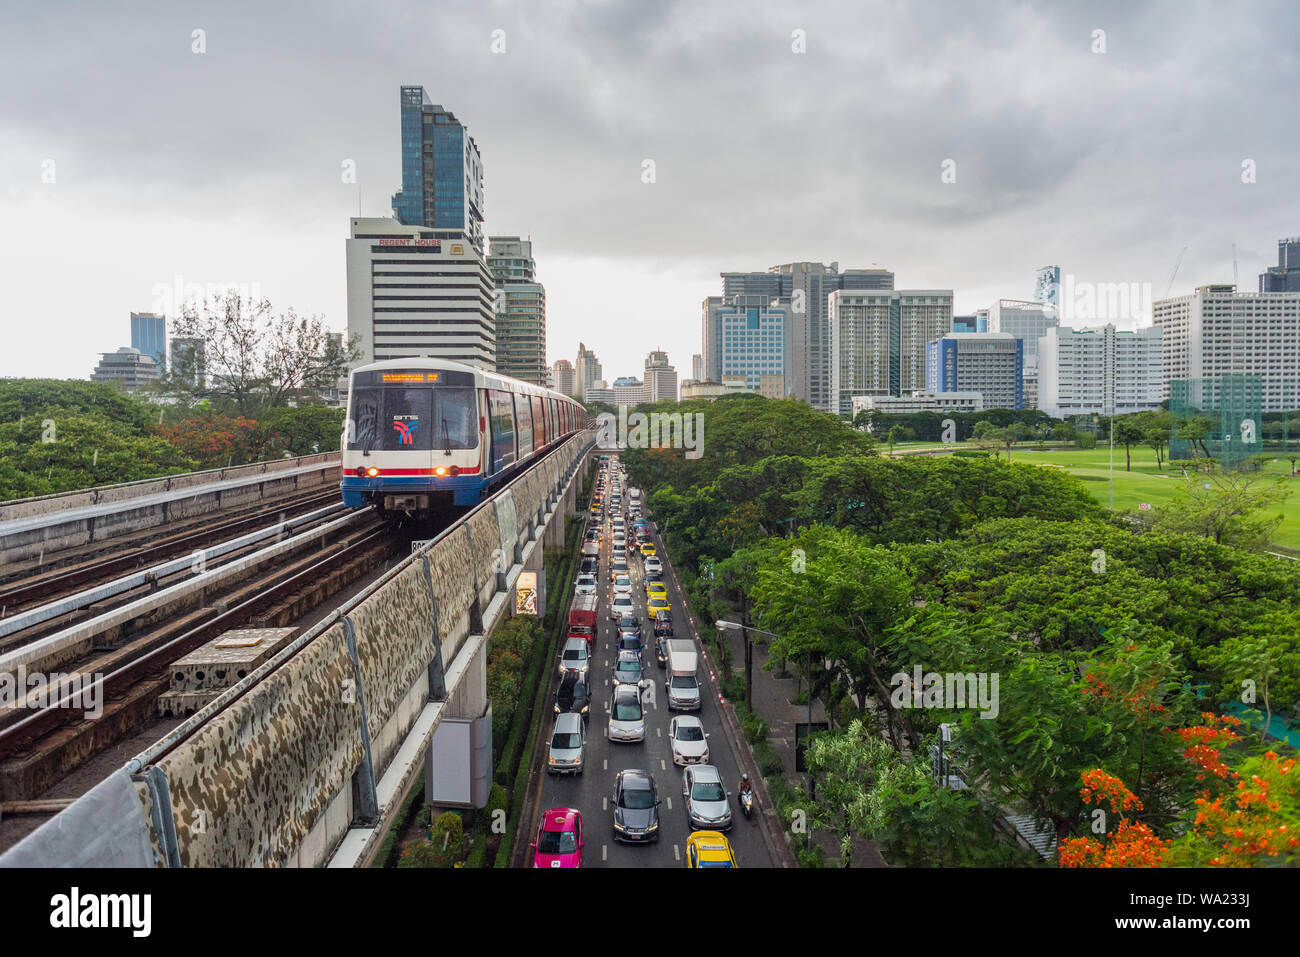 Bangkok - Giugno 9, 2019: un treno arriva a Ratchadamri stazione BTS durante la pioggia, al di sopra del traffico nella strada con il centro cittadino di edifici. Foto Stock